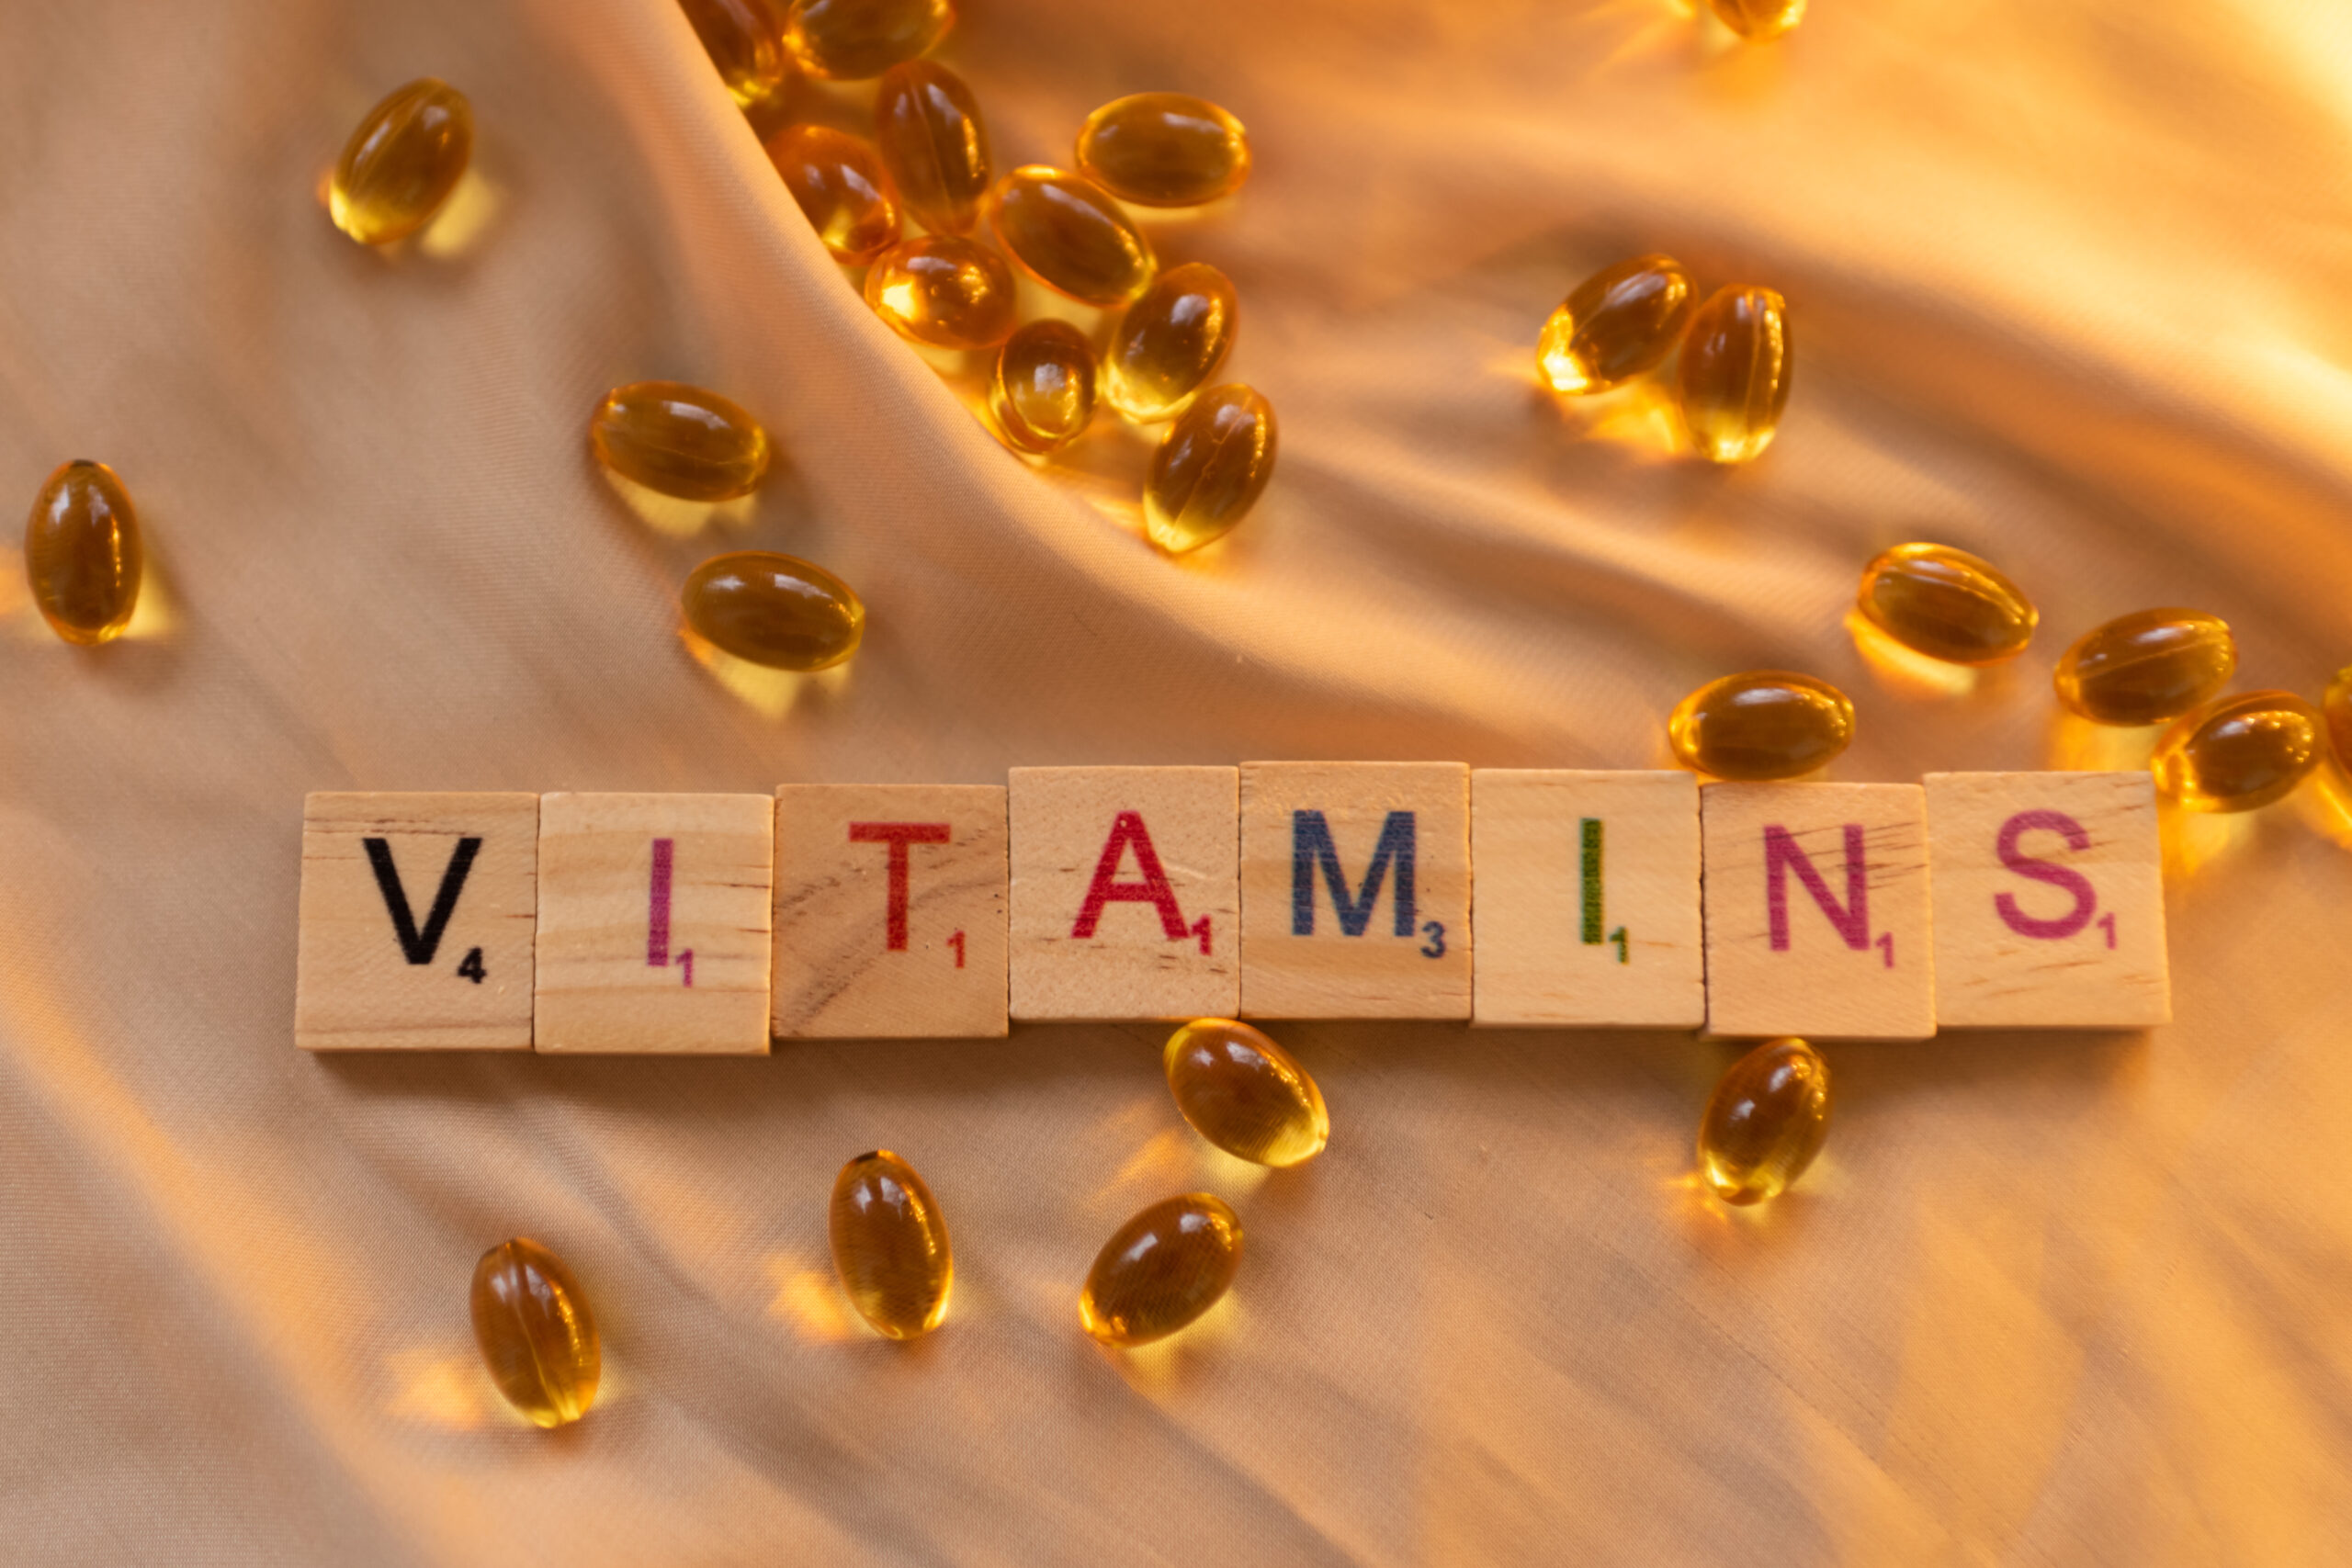 Vitamine B12 tekort